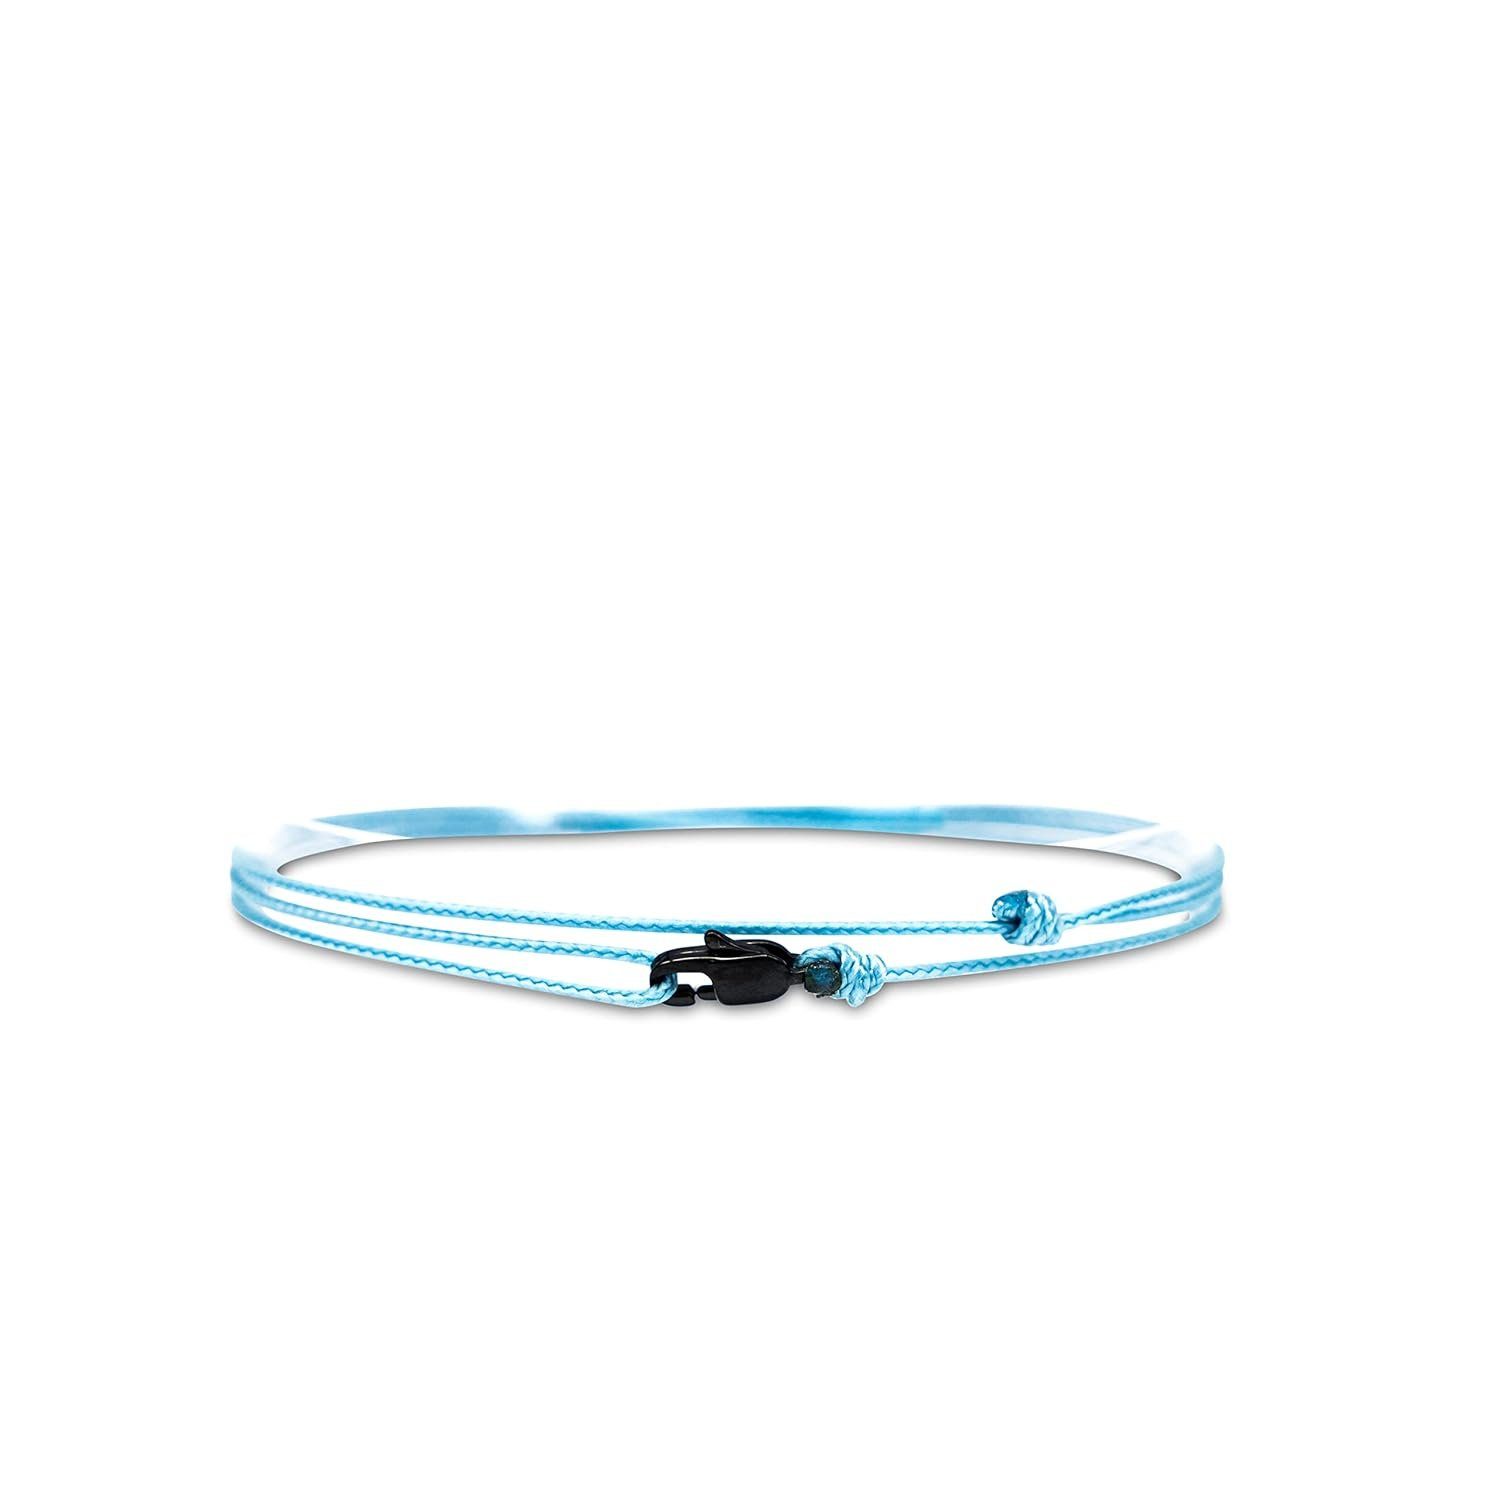 Made by Nami Wickelarmband Minimalistisches Armband mit Karabinerhaken Herren Armband Damen, Maritimes Armband Wasserfest & Verstellbar Hellblau u Schwarz